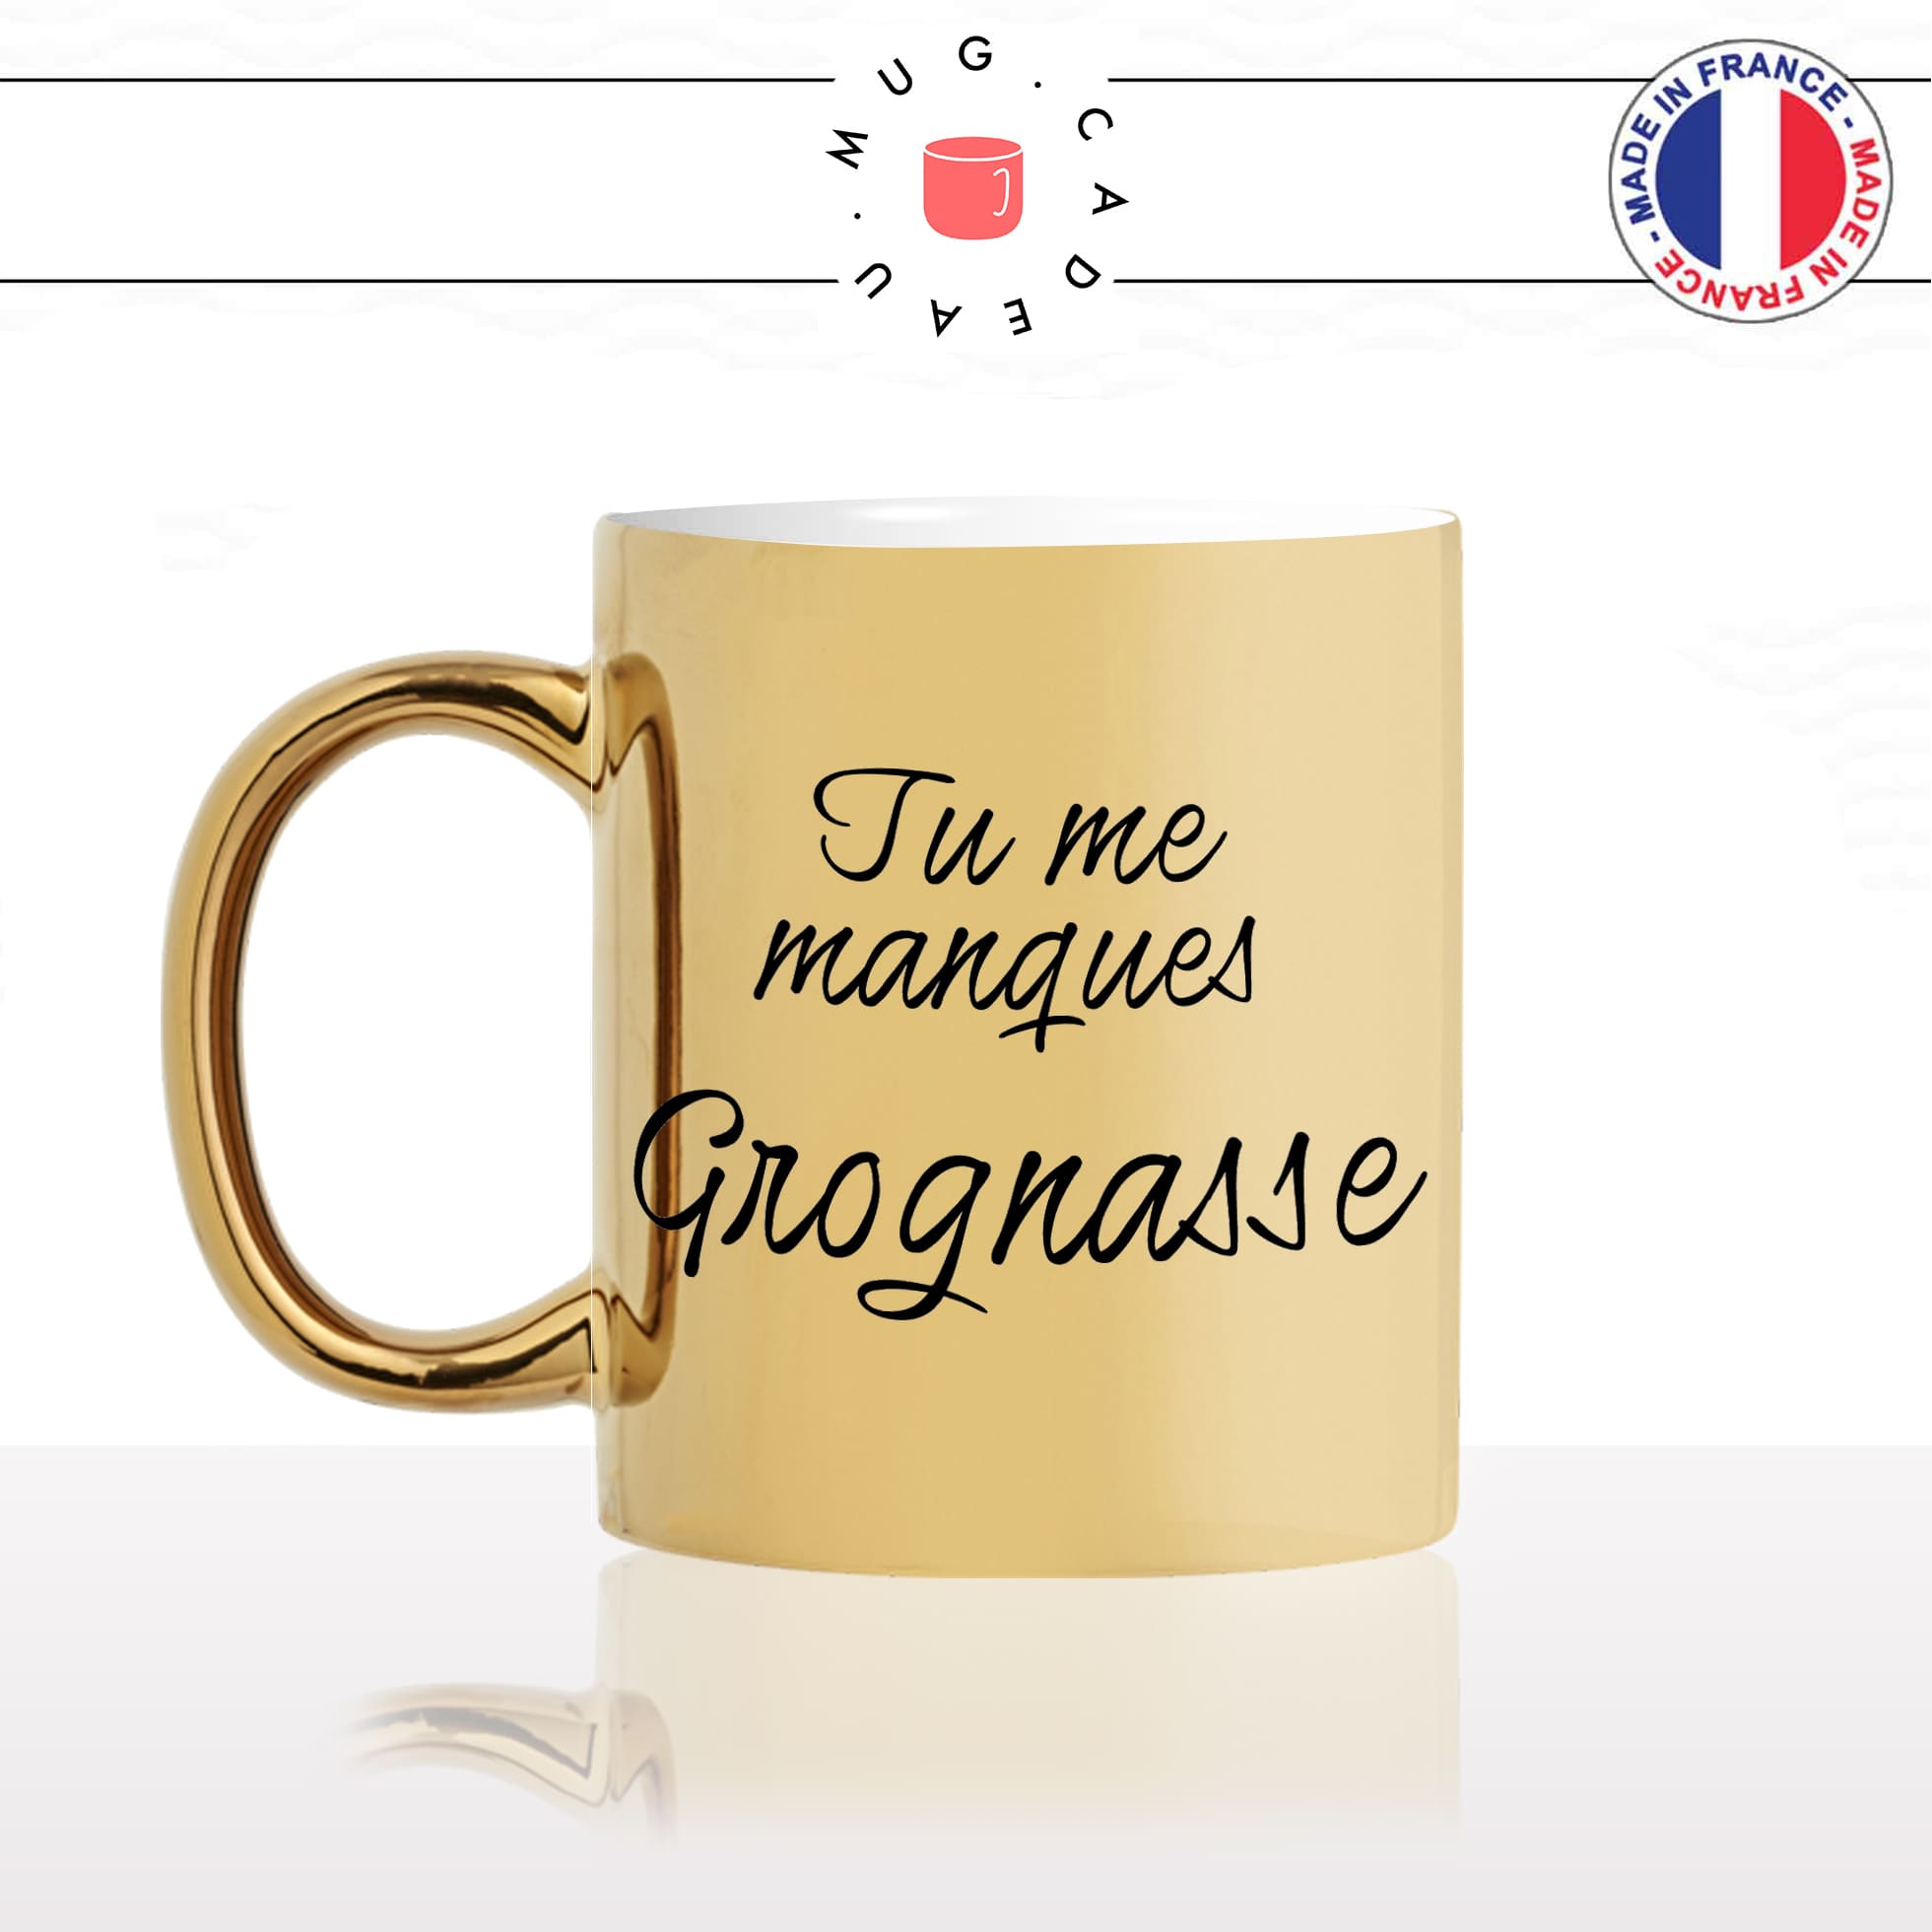 mug-tasse-or-doré-gold-unique-tu-me-manques-grognasse-copine-collegue-homme-femme-parodie-humour-fun-cool-idée-cadeau-original